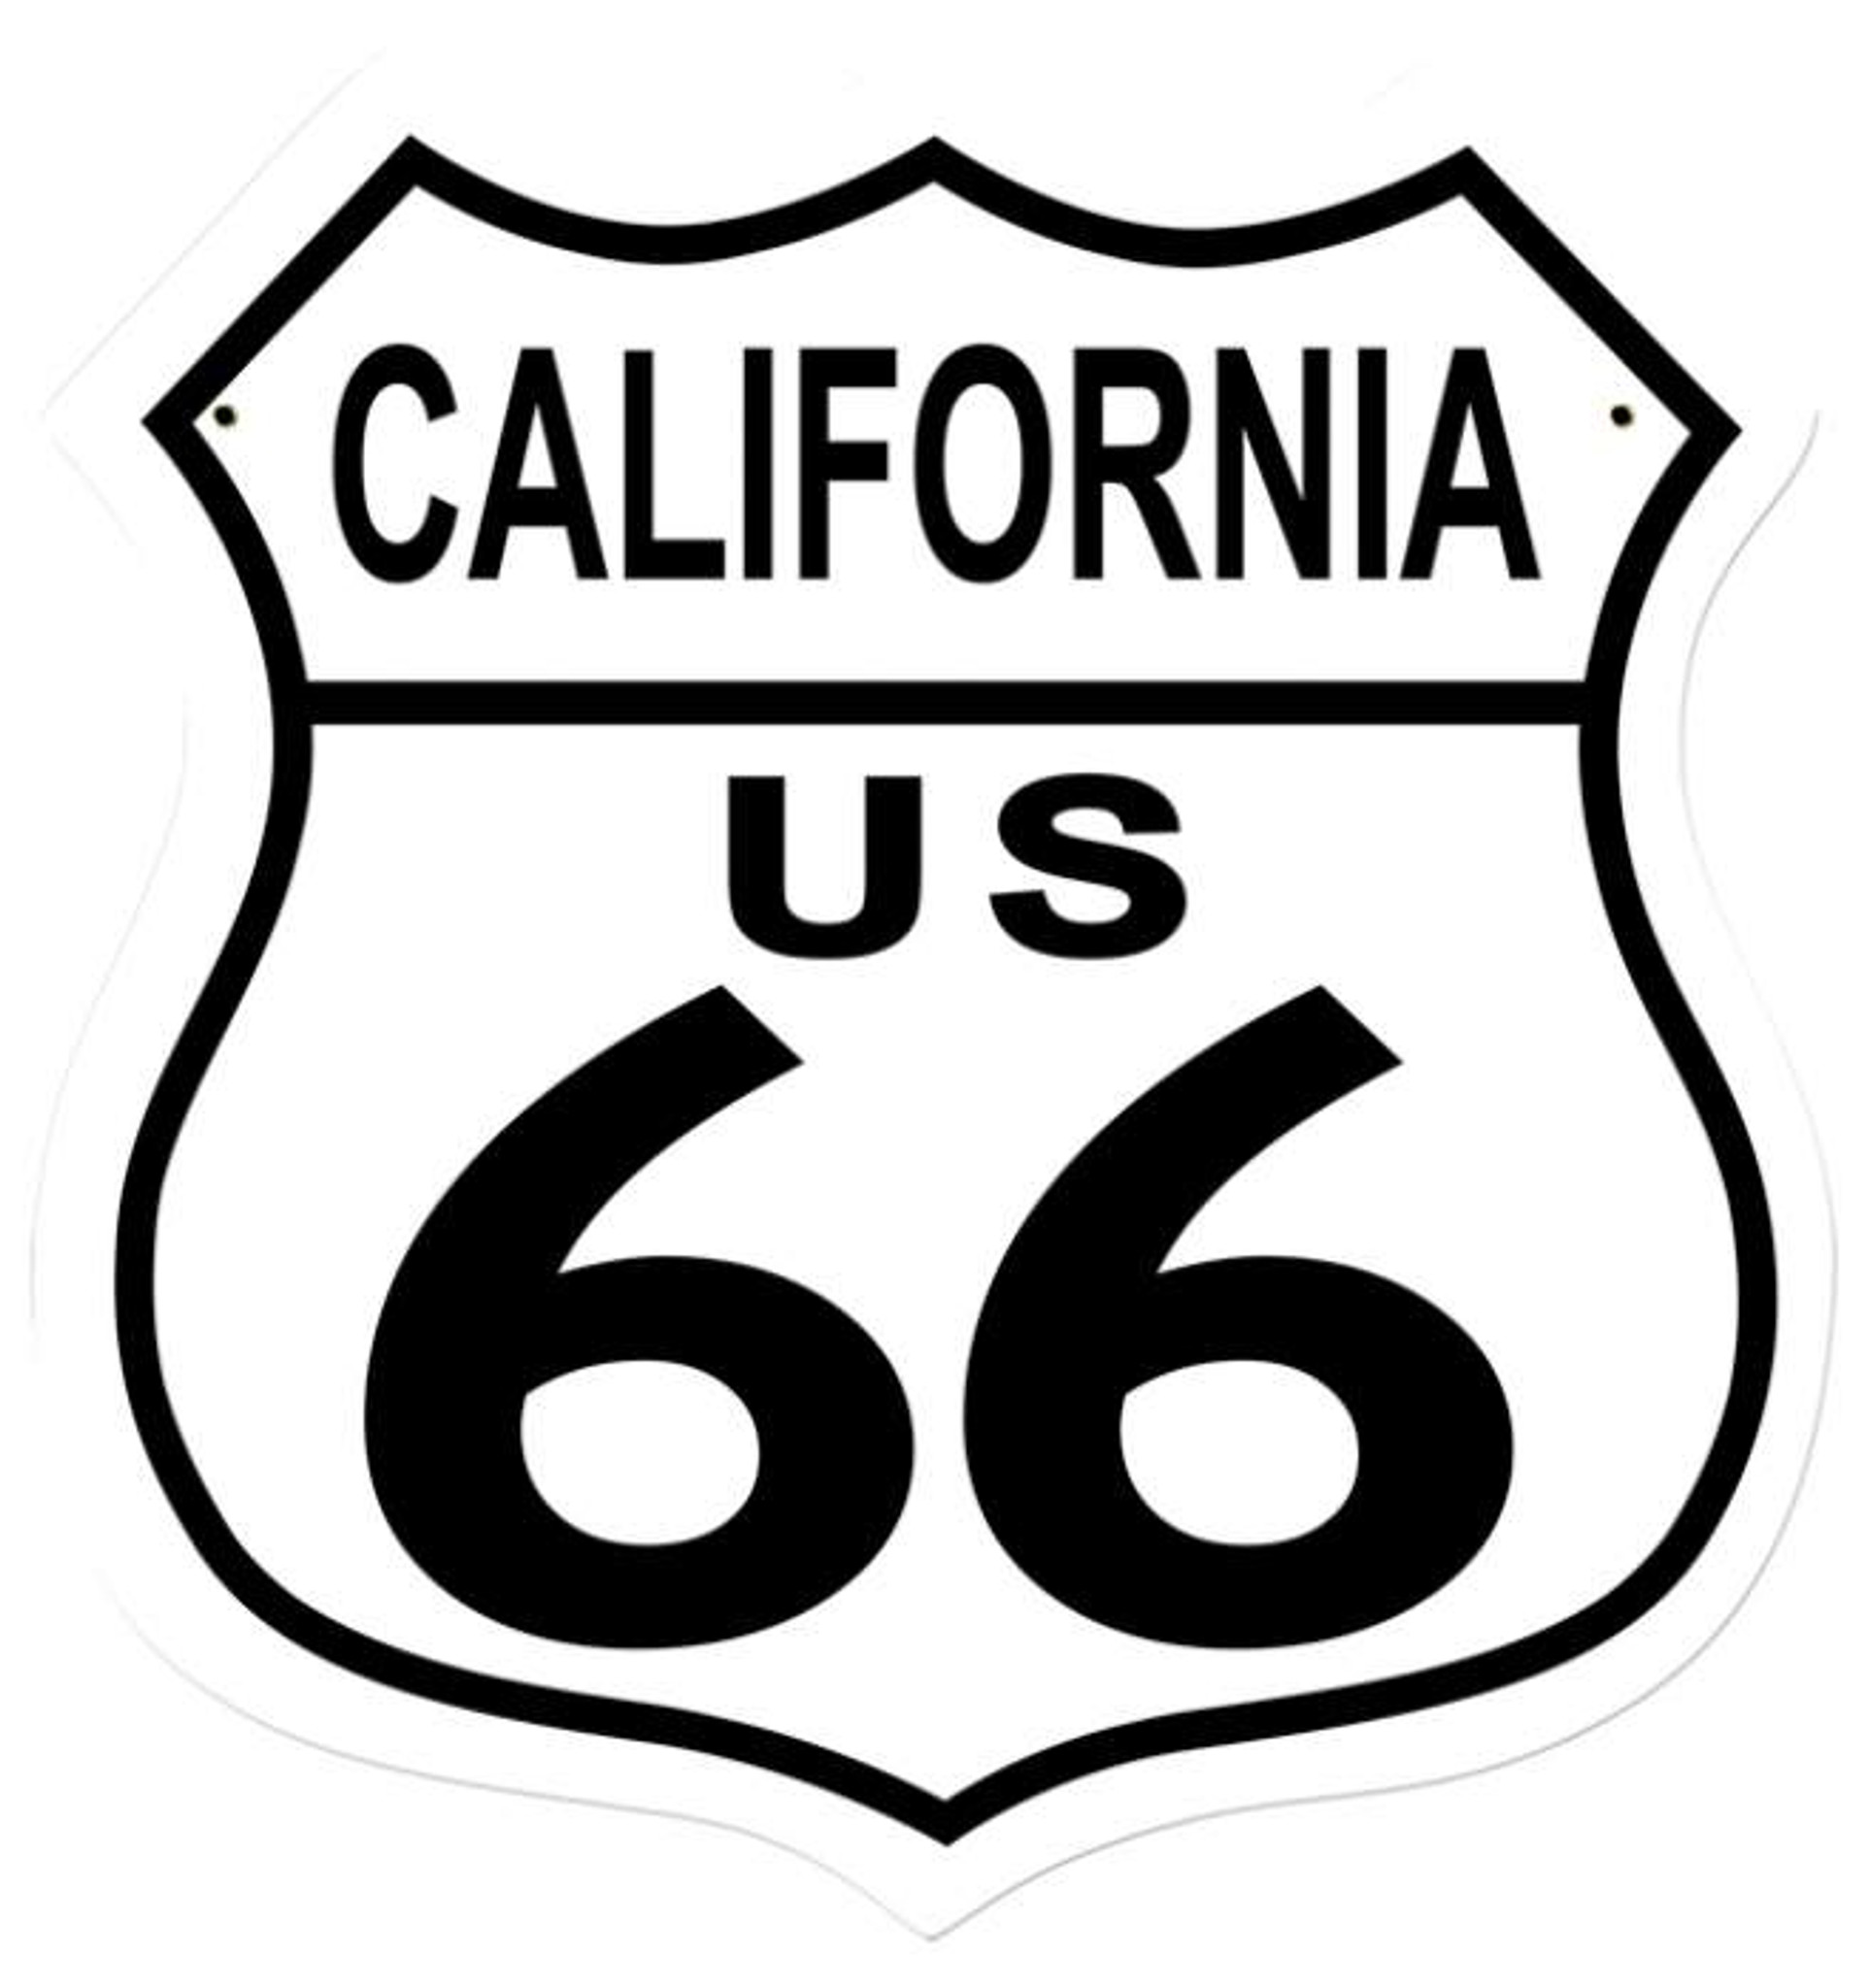 Retro Route 66 California Shield Metal Sign 15 x 15 Inches